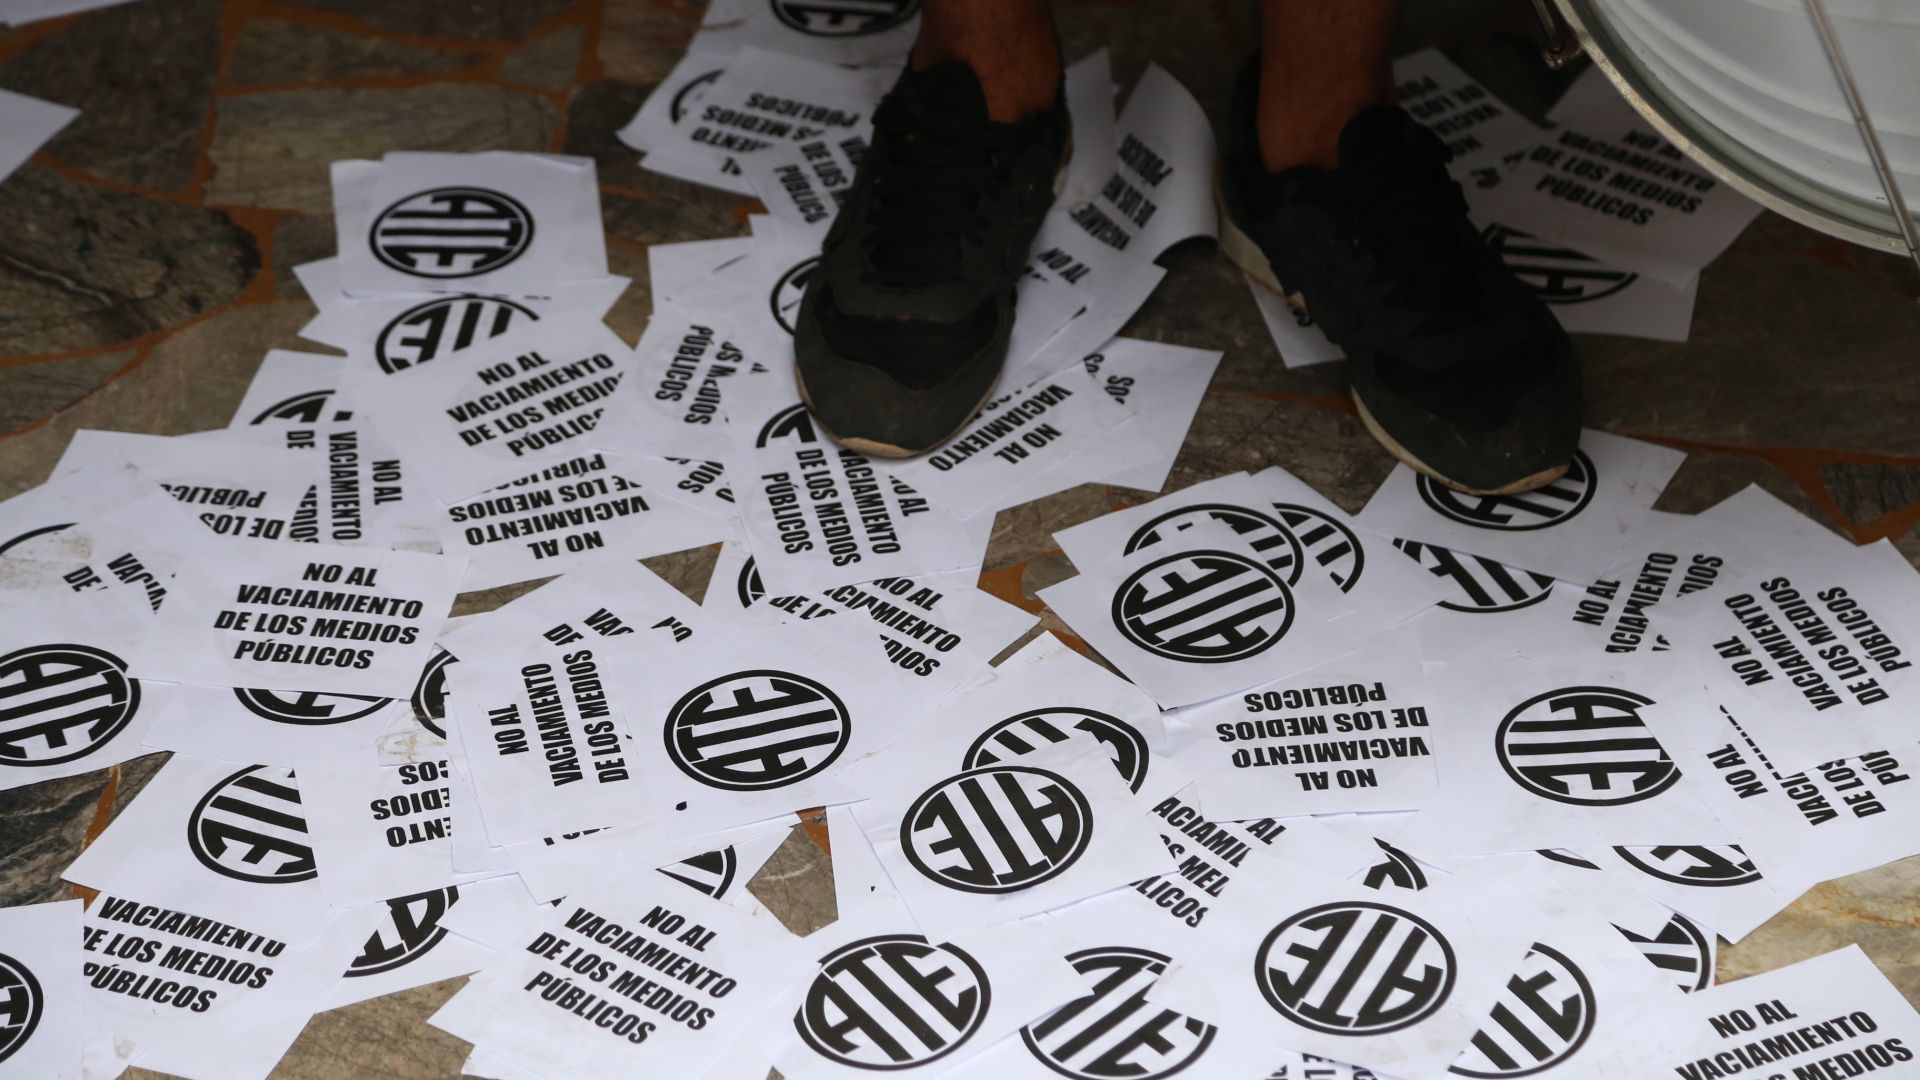 Radio Nacional reclamó por aumento salarial y denunció vaciamiento del Organismo